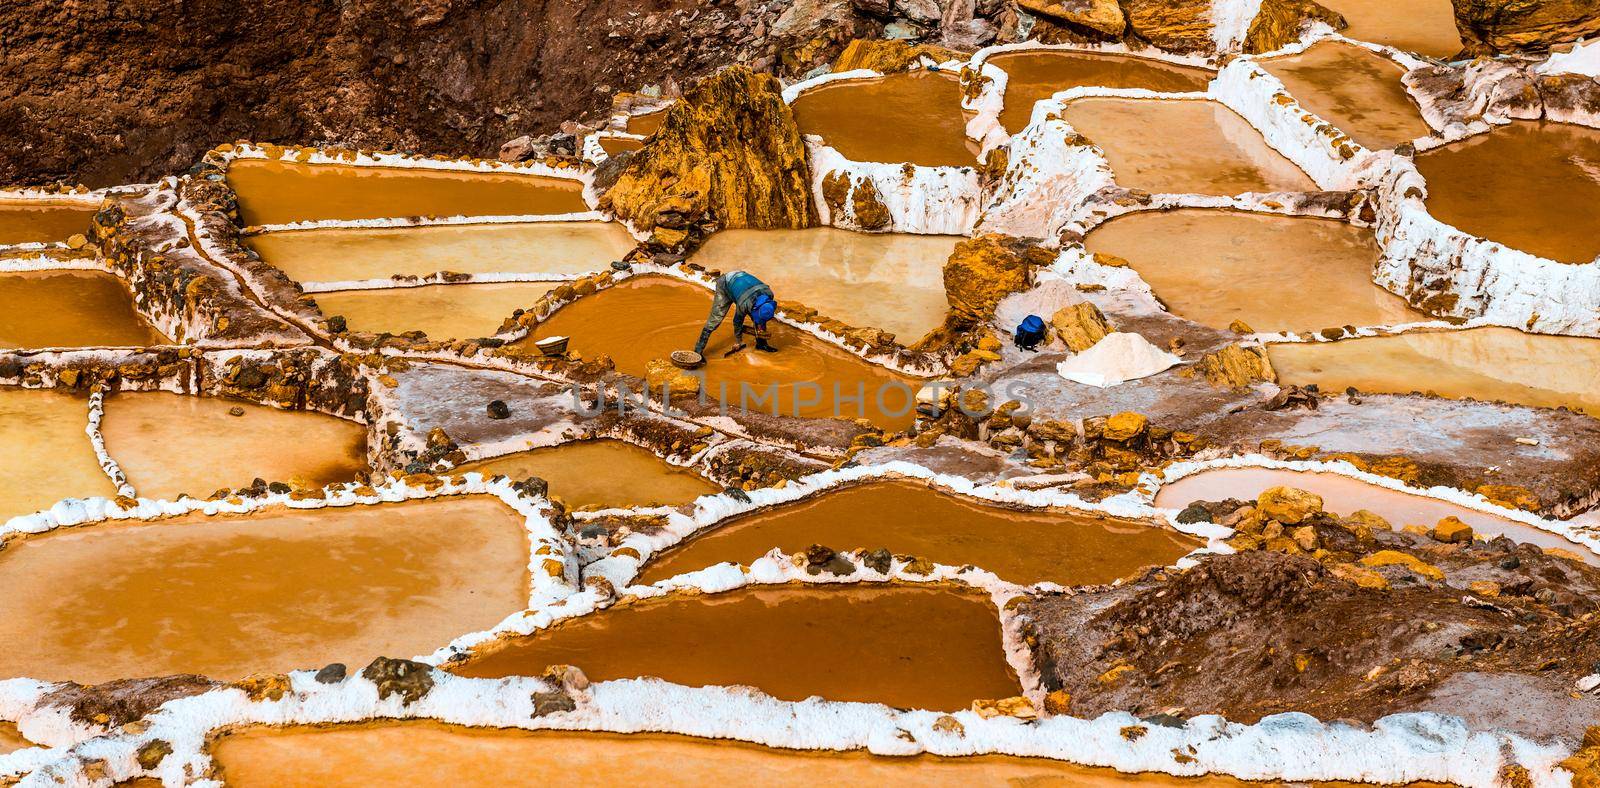 salt extraction in Peru. Workers at Salinas de Maras